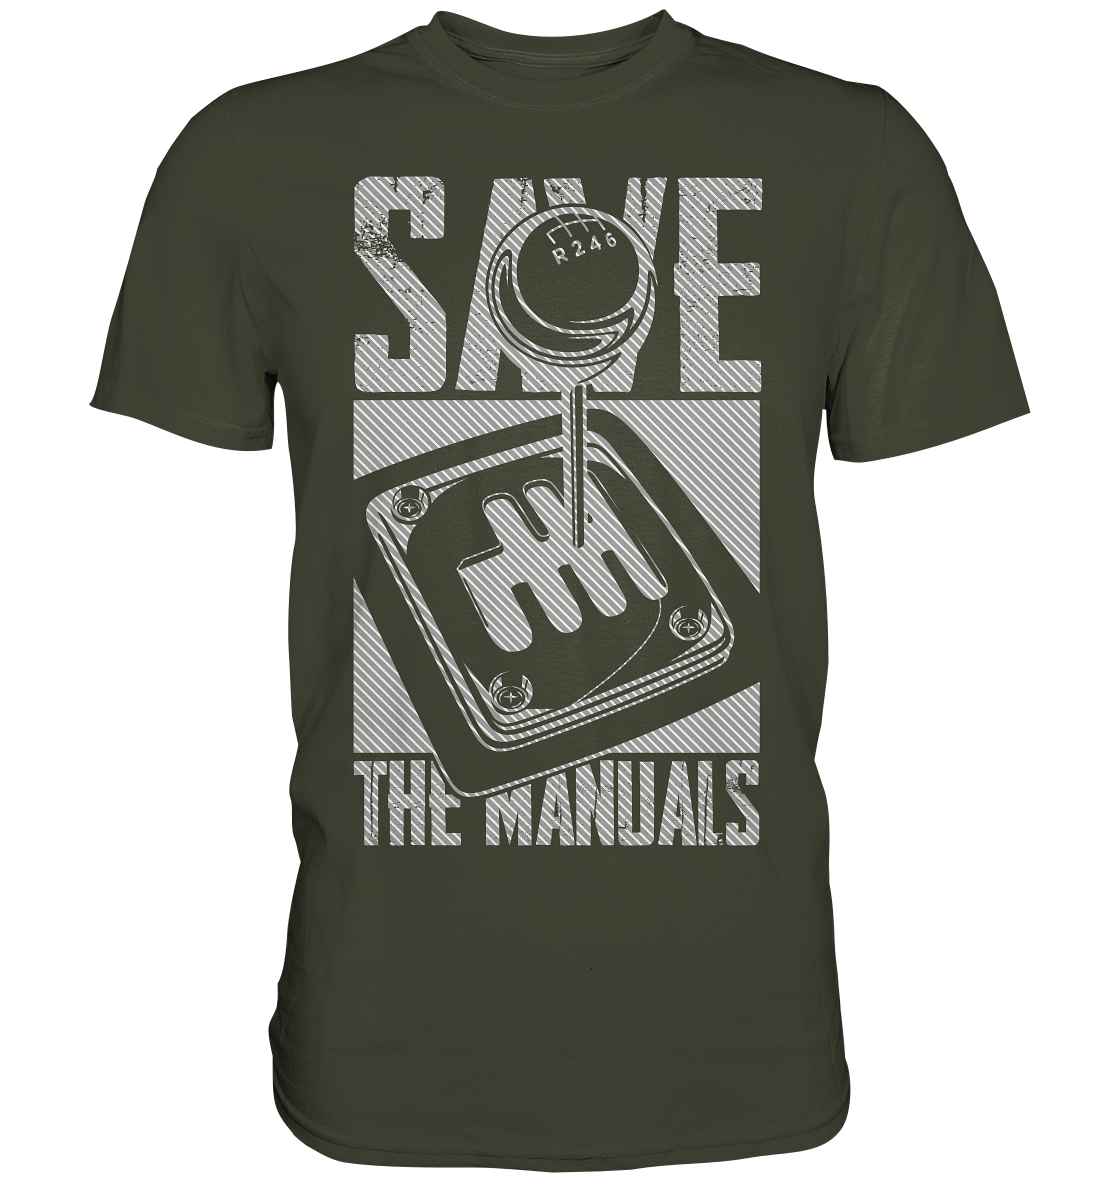 Save the Manuals hell - Premium Shirt - MotoMerch.de